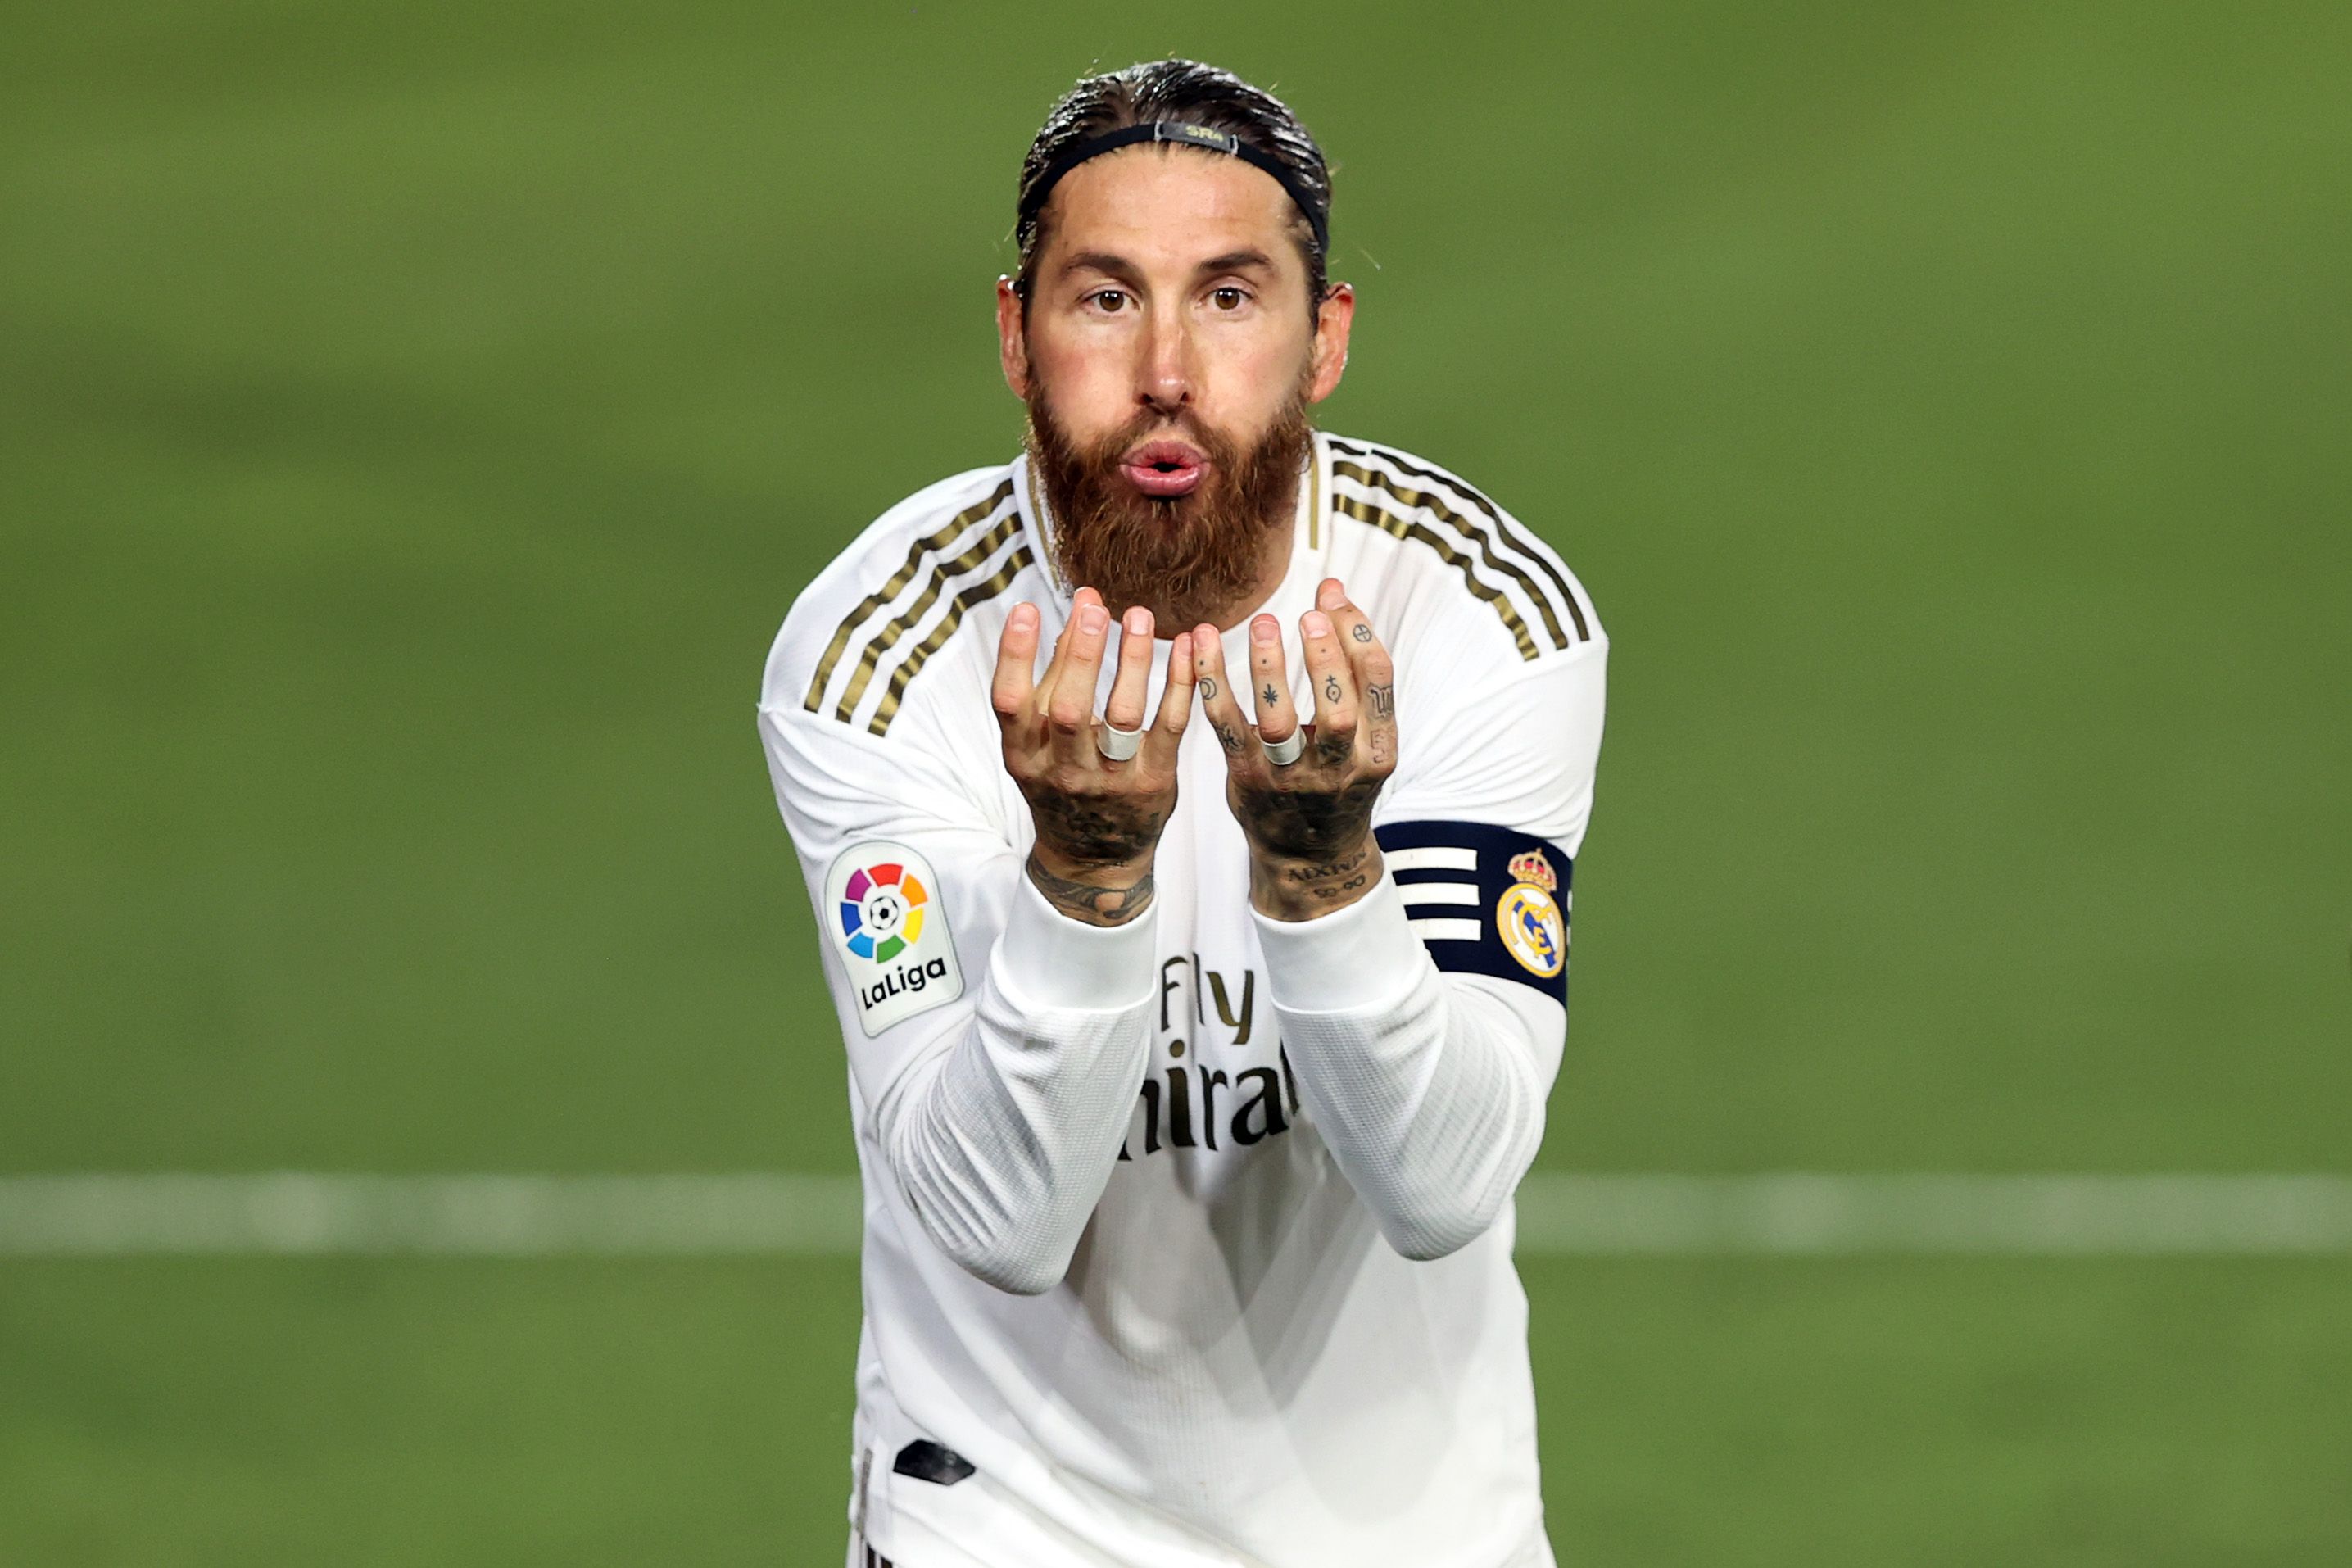 Ramos at Real Madrid